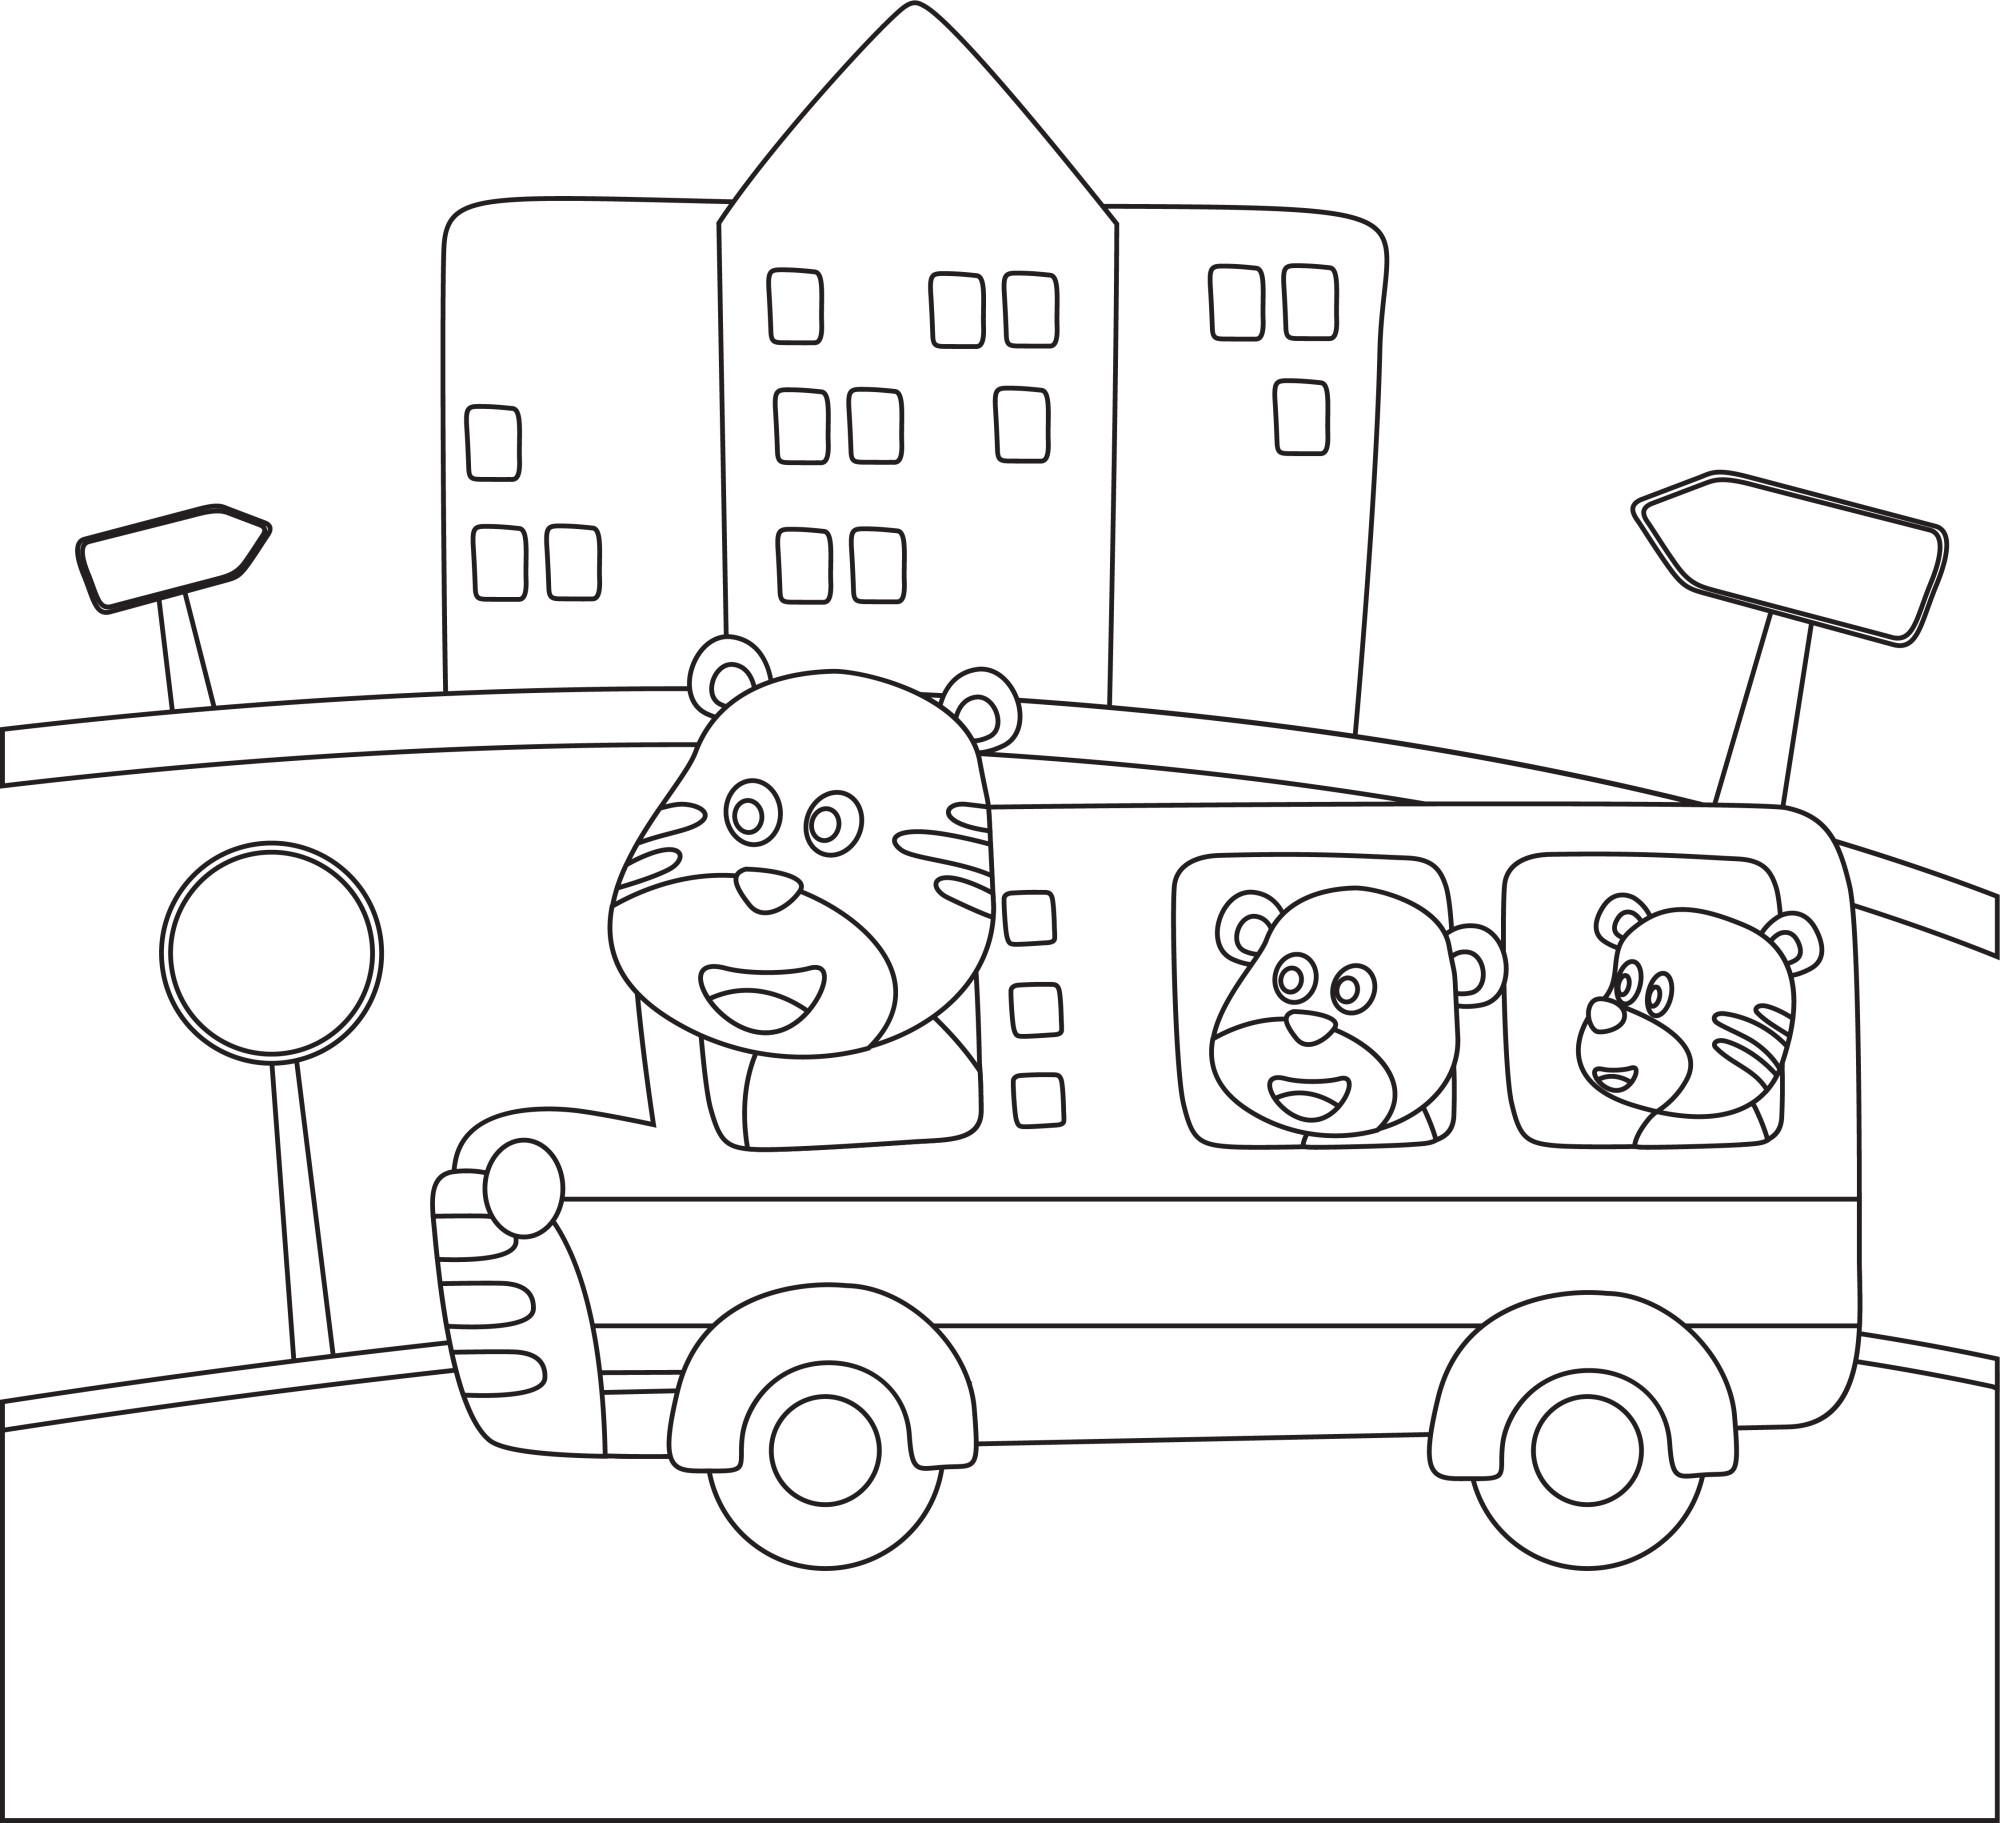 Раскраска для детей: автобус с пассажирами тигрятами едет по маршруту